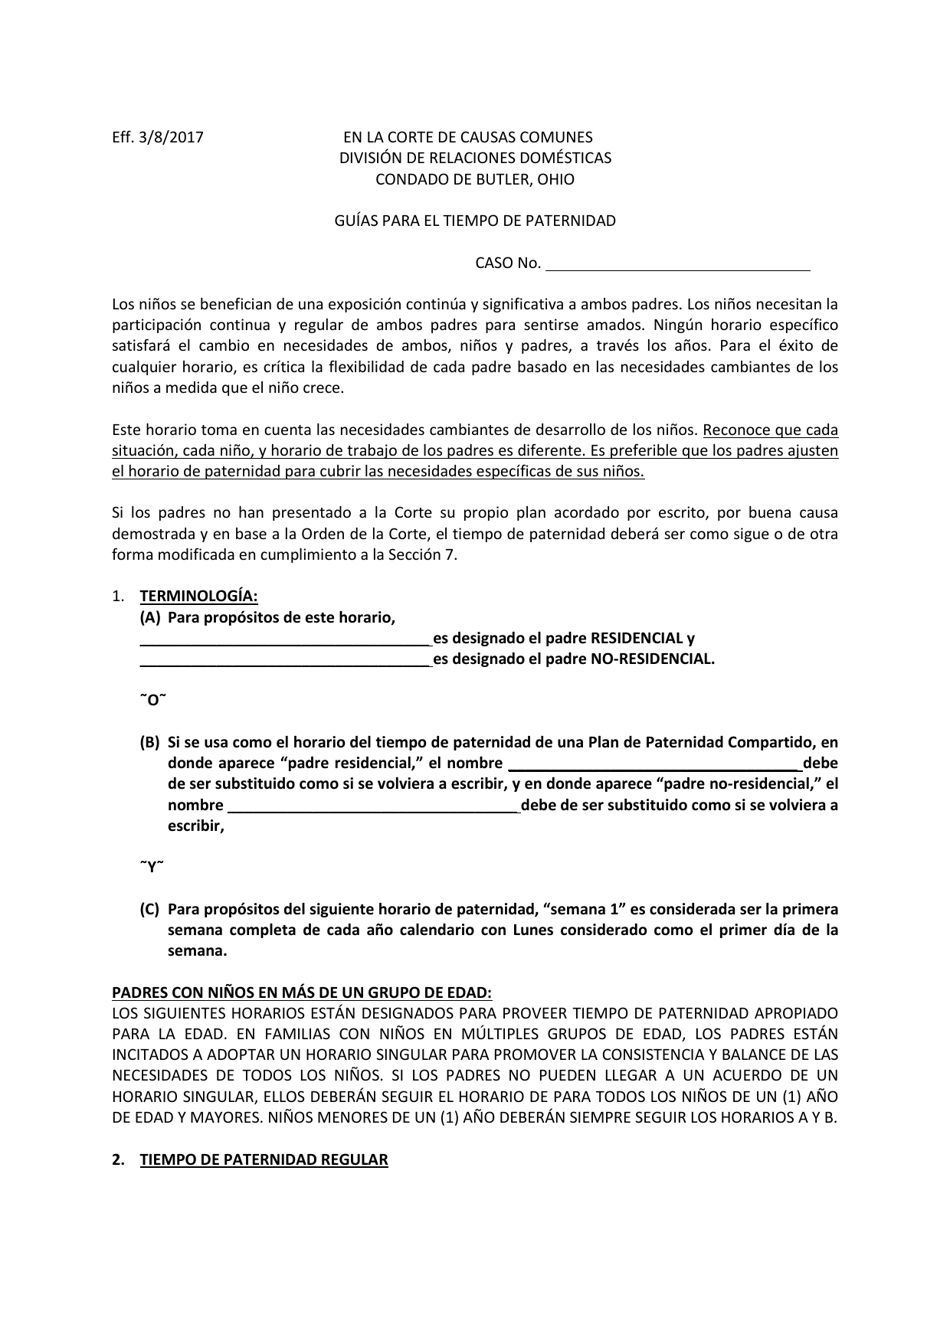 Formulario DR610.1 Guias Para El Tiempo De Paternidad - Butler County, Ohio (Spanish), Page 1